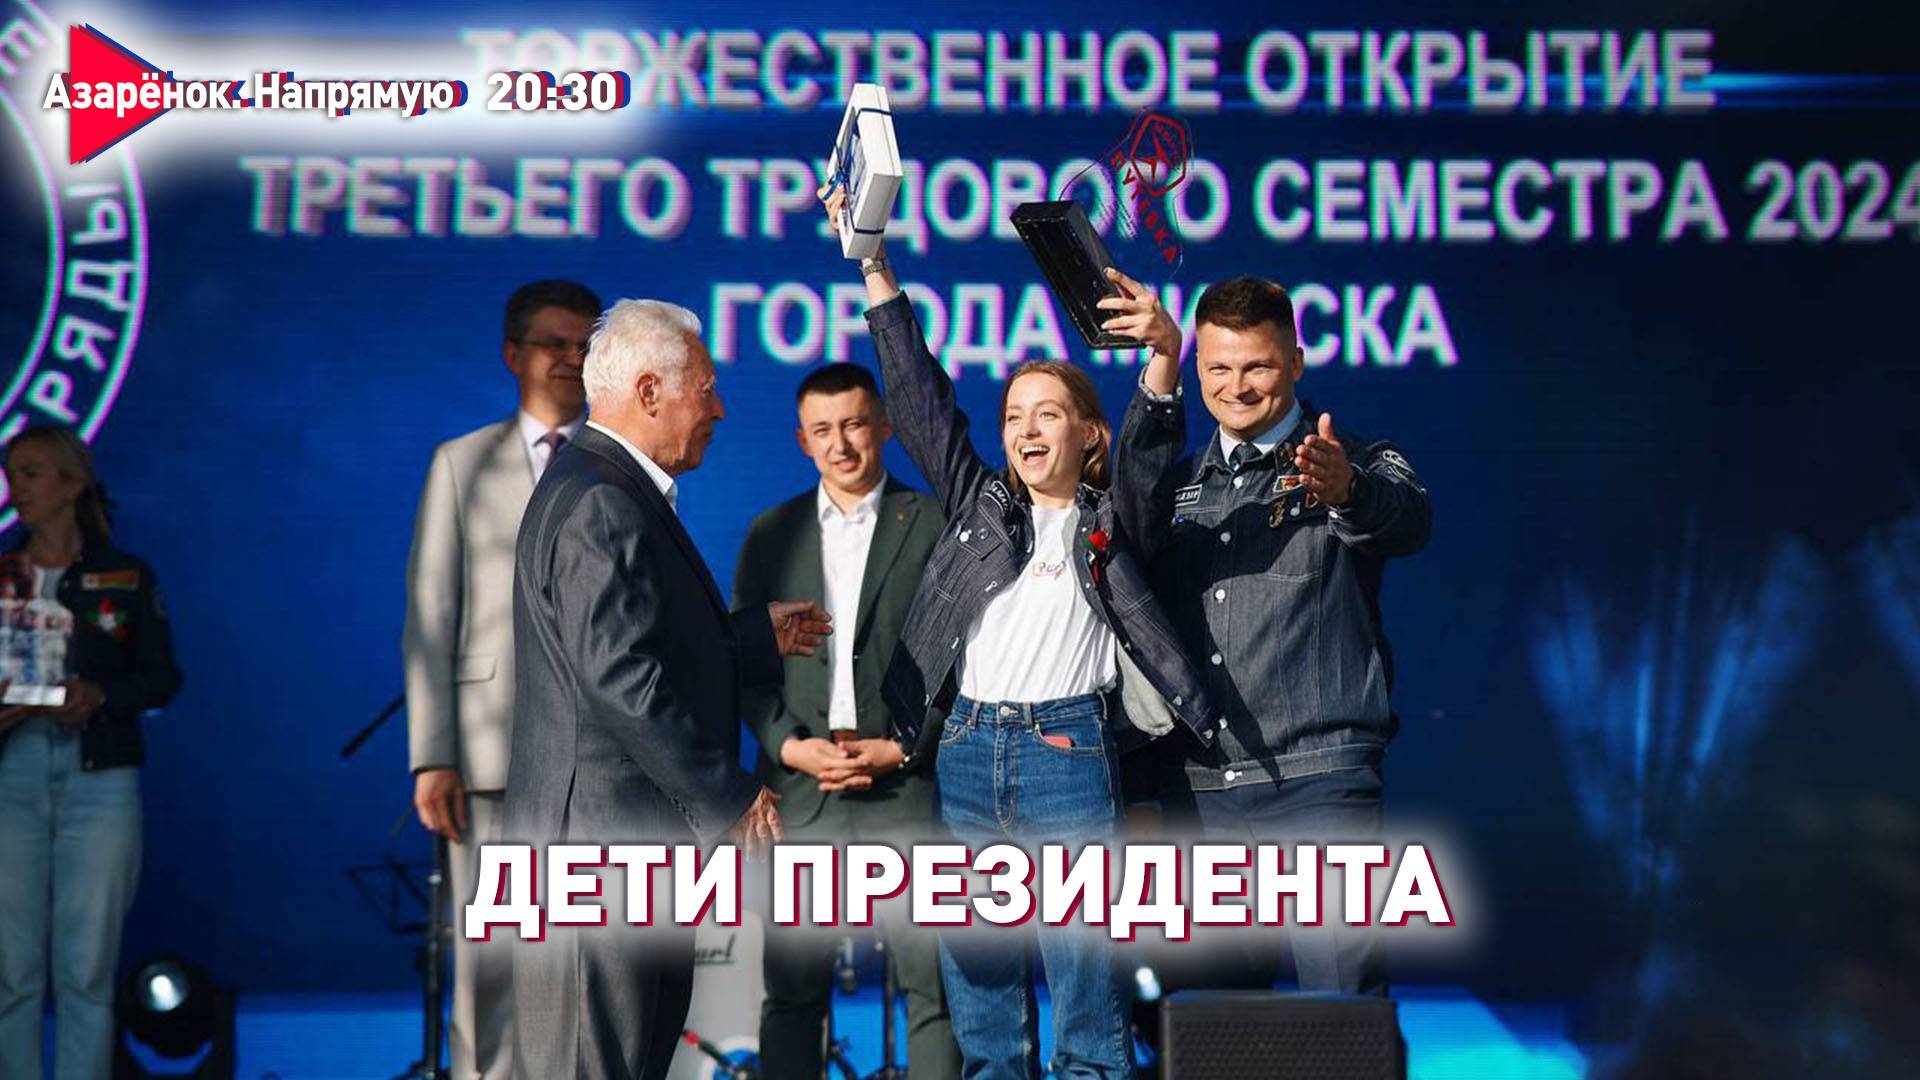 Новый министр информации Беларуси | Как воспитать элиту? | Лукьянов, Азарёнок